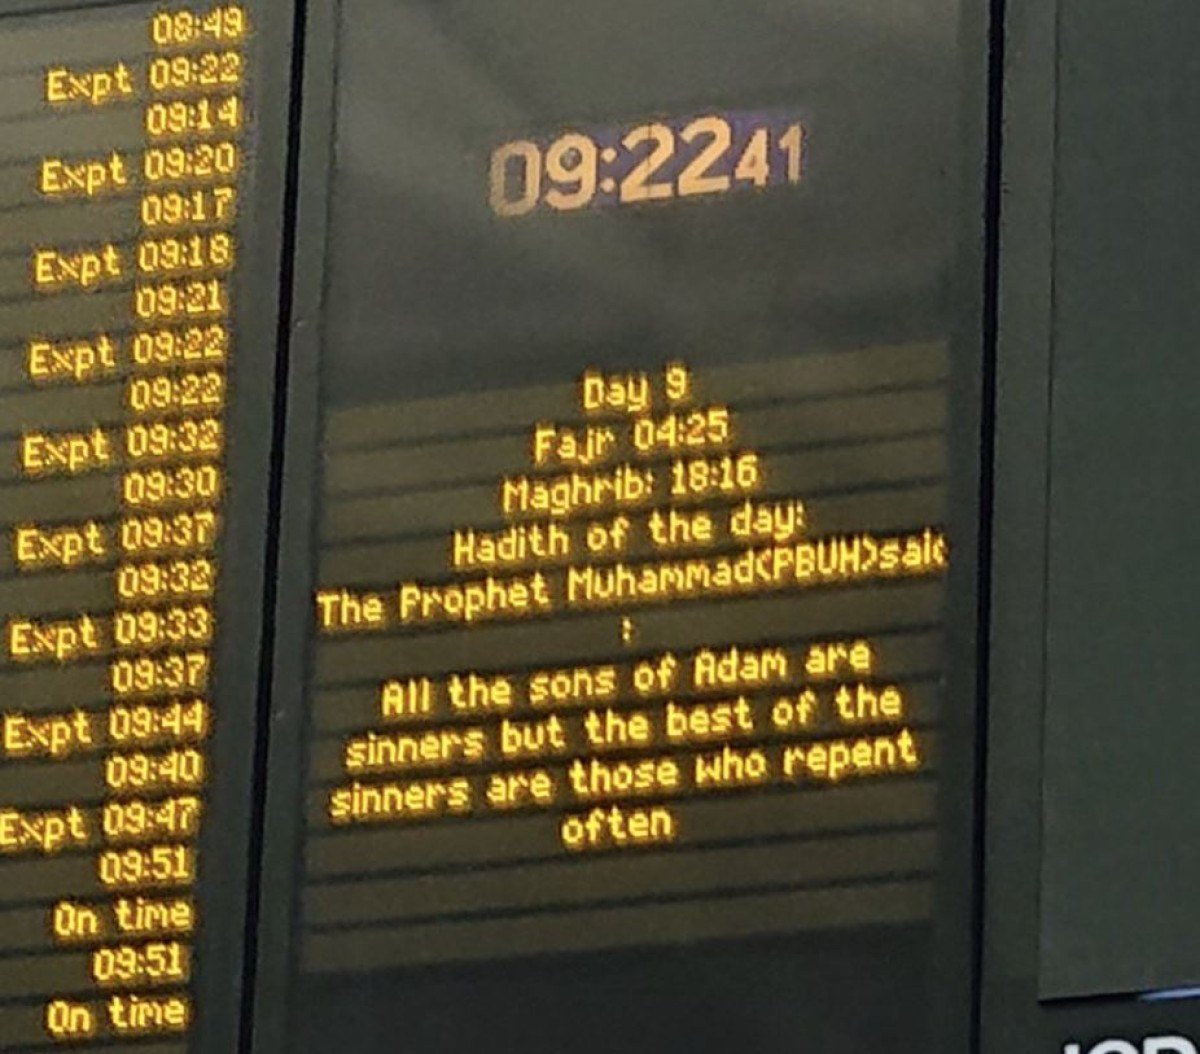 1710932320 502 Londra tren istasyonunda Ramazan mesaji Hz Muhammedin hadisini yansittilar